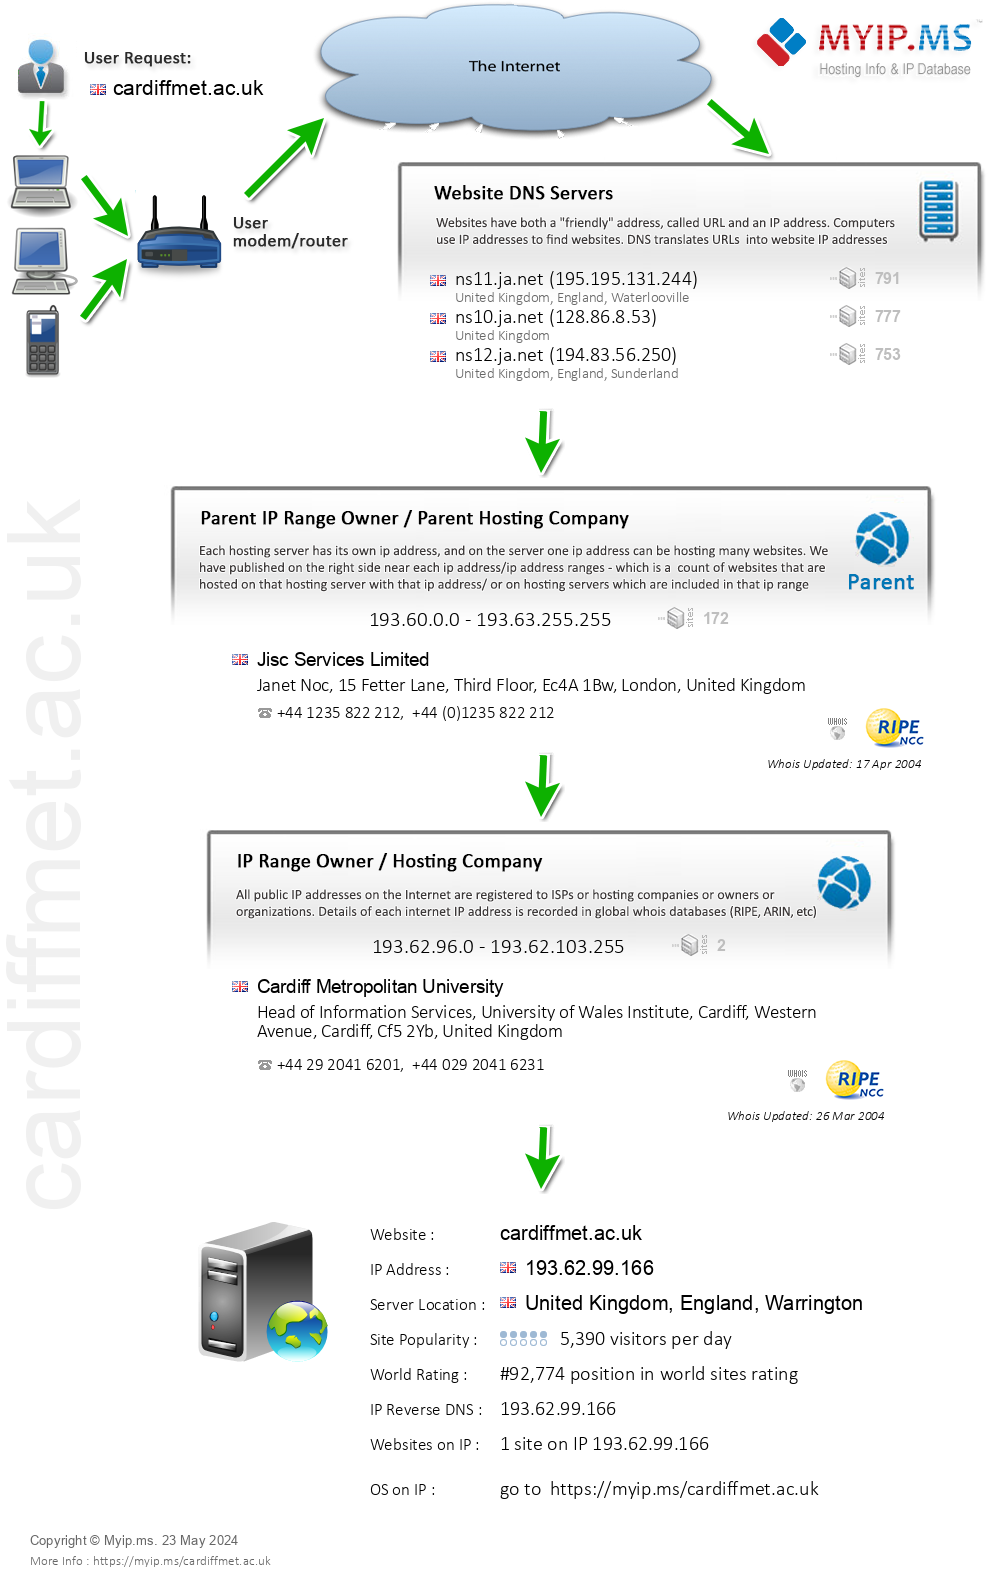 Cardiffmet.ac.uk - Website Hosting Visual IP Diagram